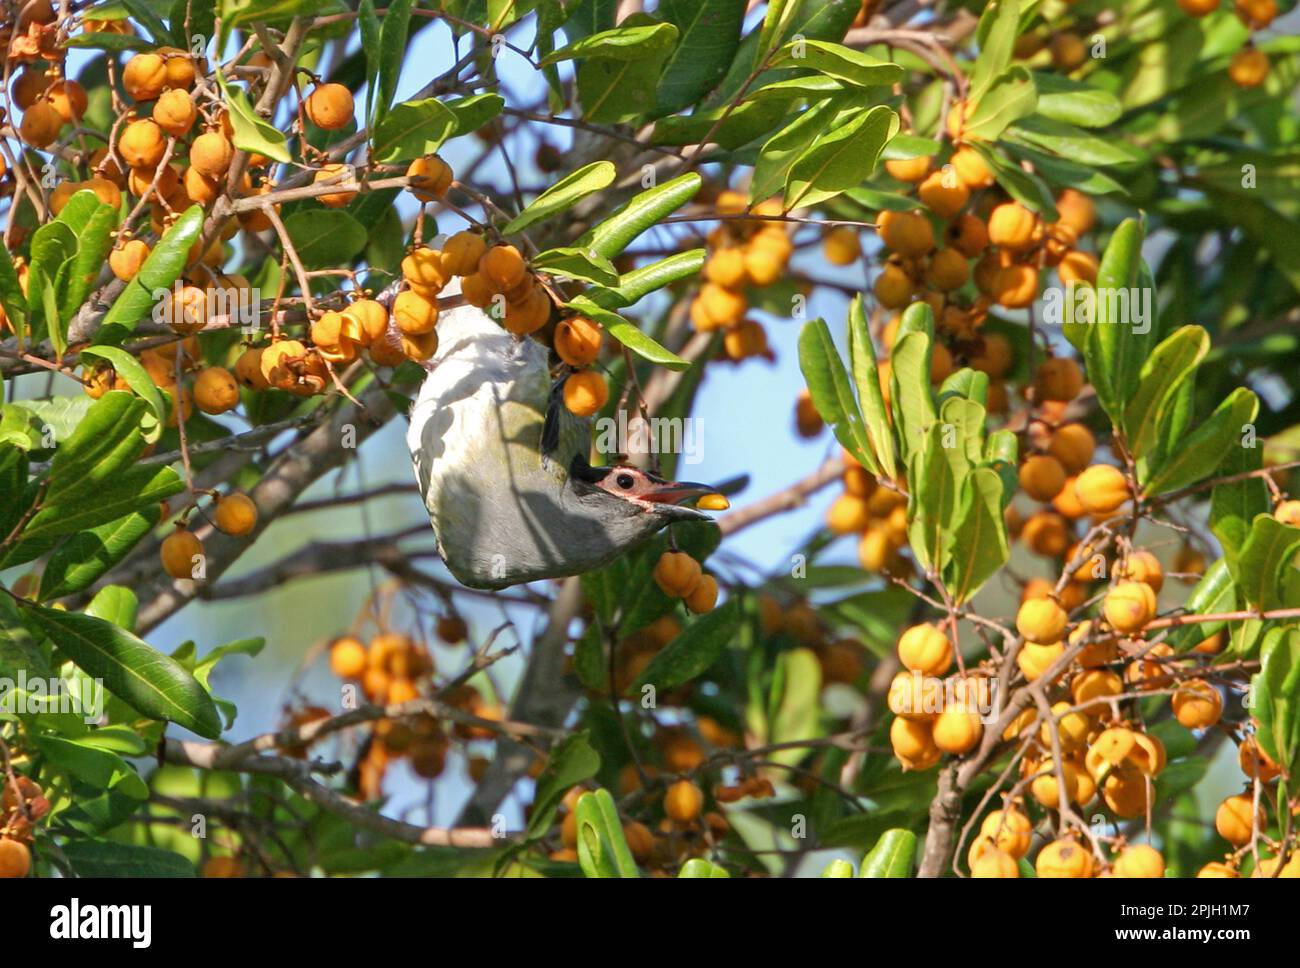 Oiseau de figuier vert (Sphecotheres viridis vieilloti), forme de visage rose, mâle adulte dans un arbre fruitier, en train de jeter des graines, Queensland, Australie Banque D'Images